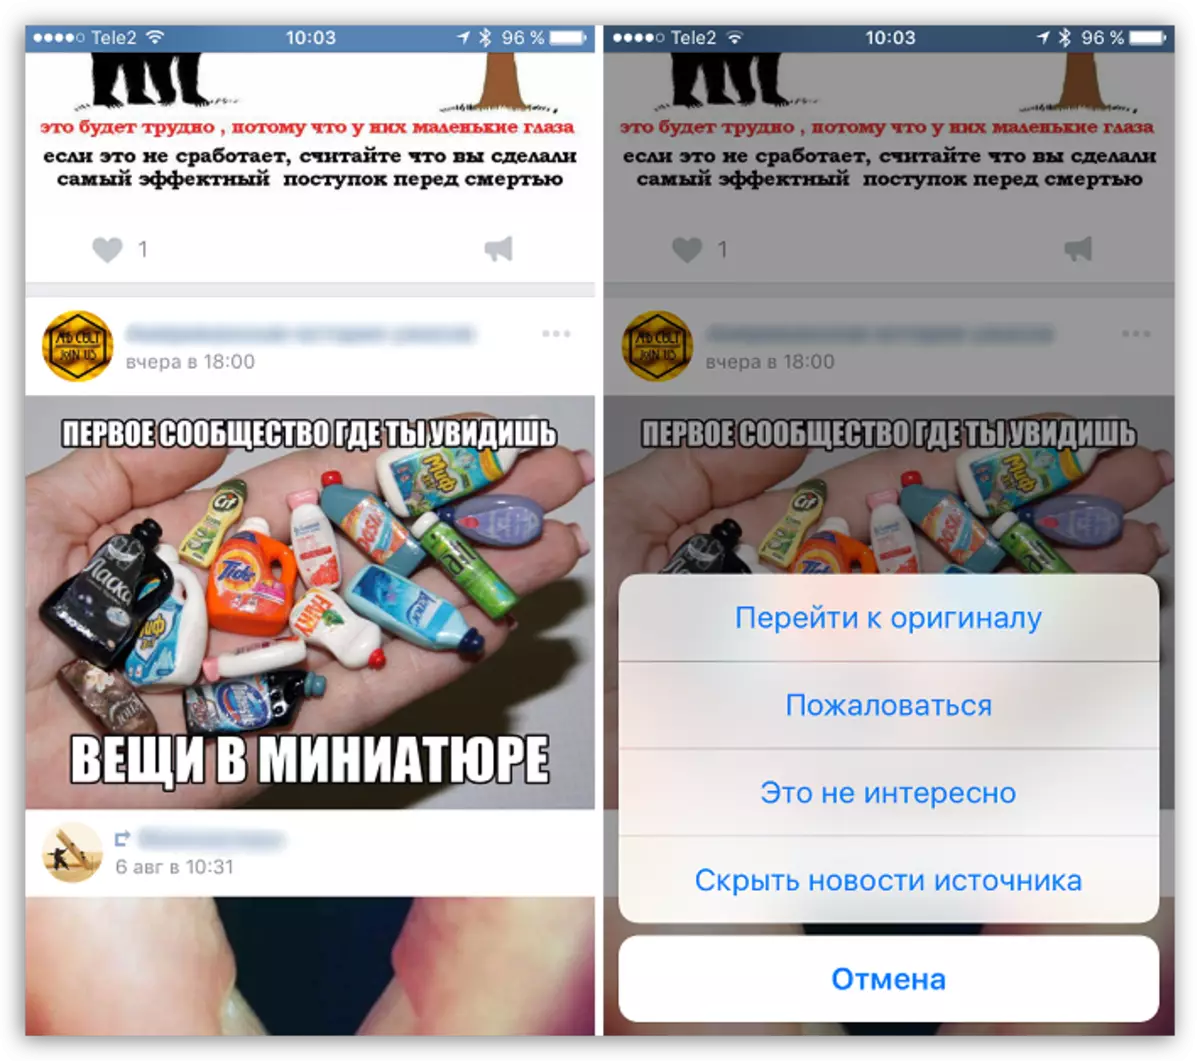 Νέα κορδέλα στο Vkontakte για Ίο